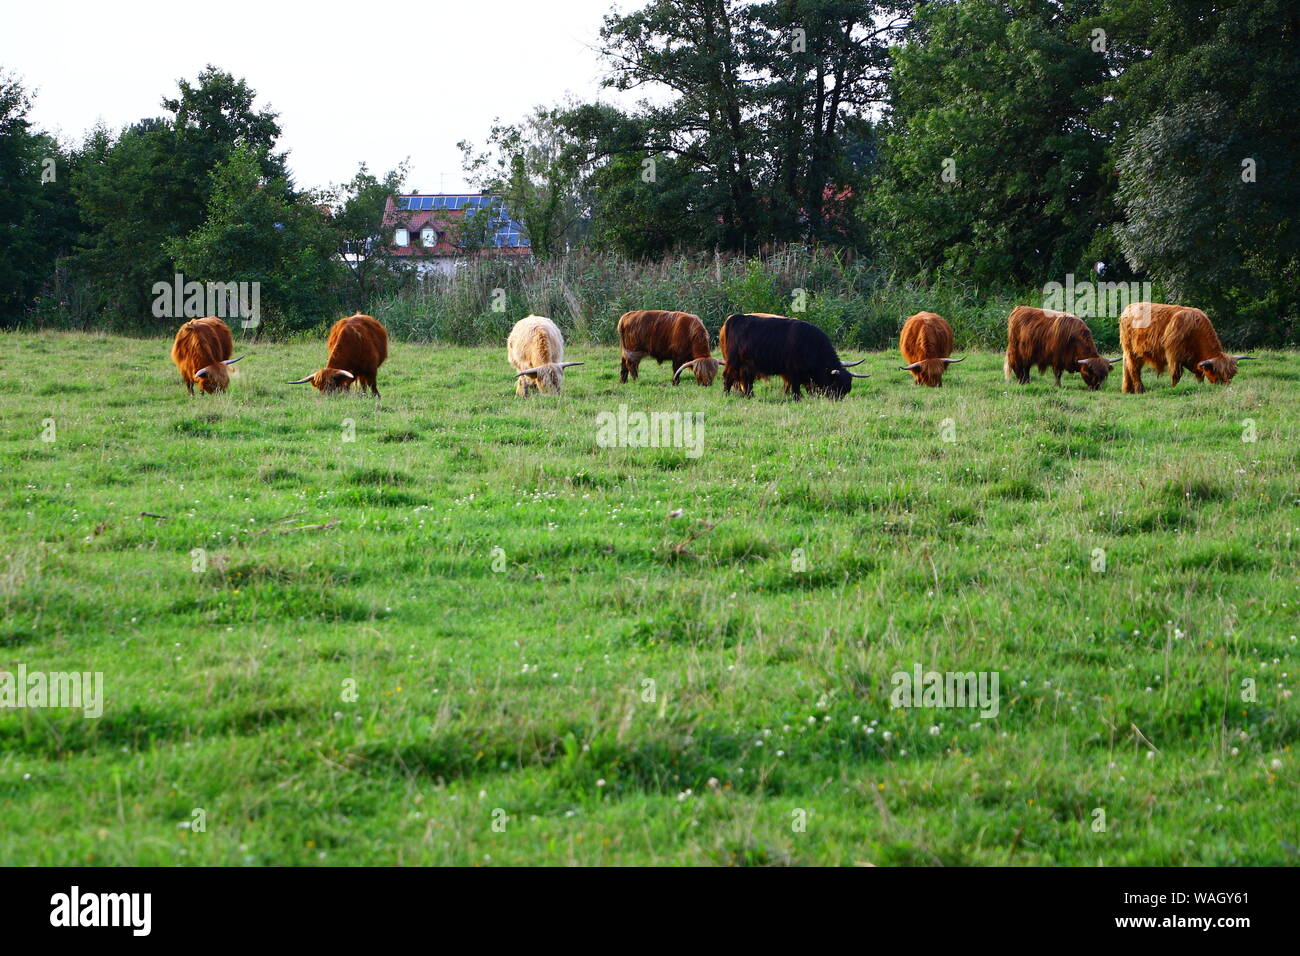 Schottische Hochlandrinder auf einer Weide in Bad Gögging, einem Ortsteil von Neustadt an der Donau in Bayern Stock Photo